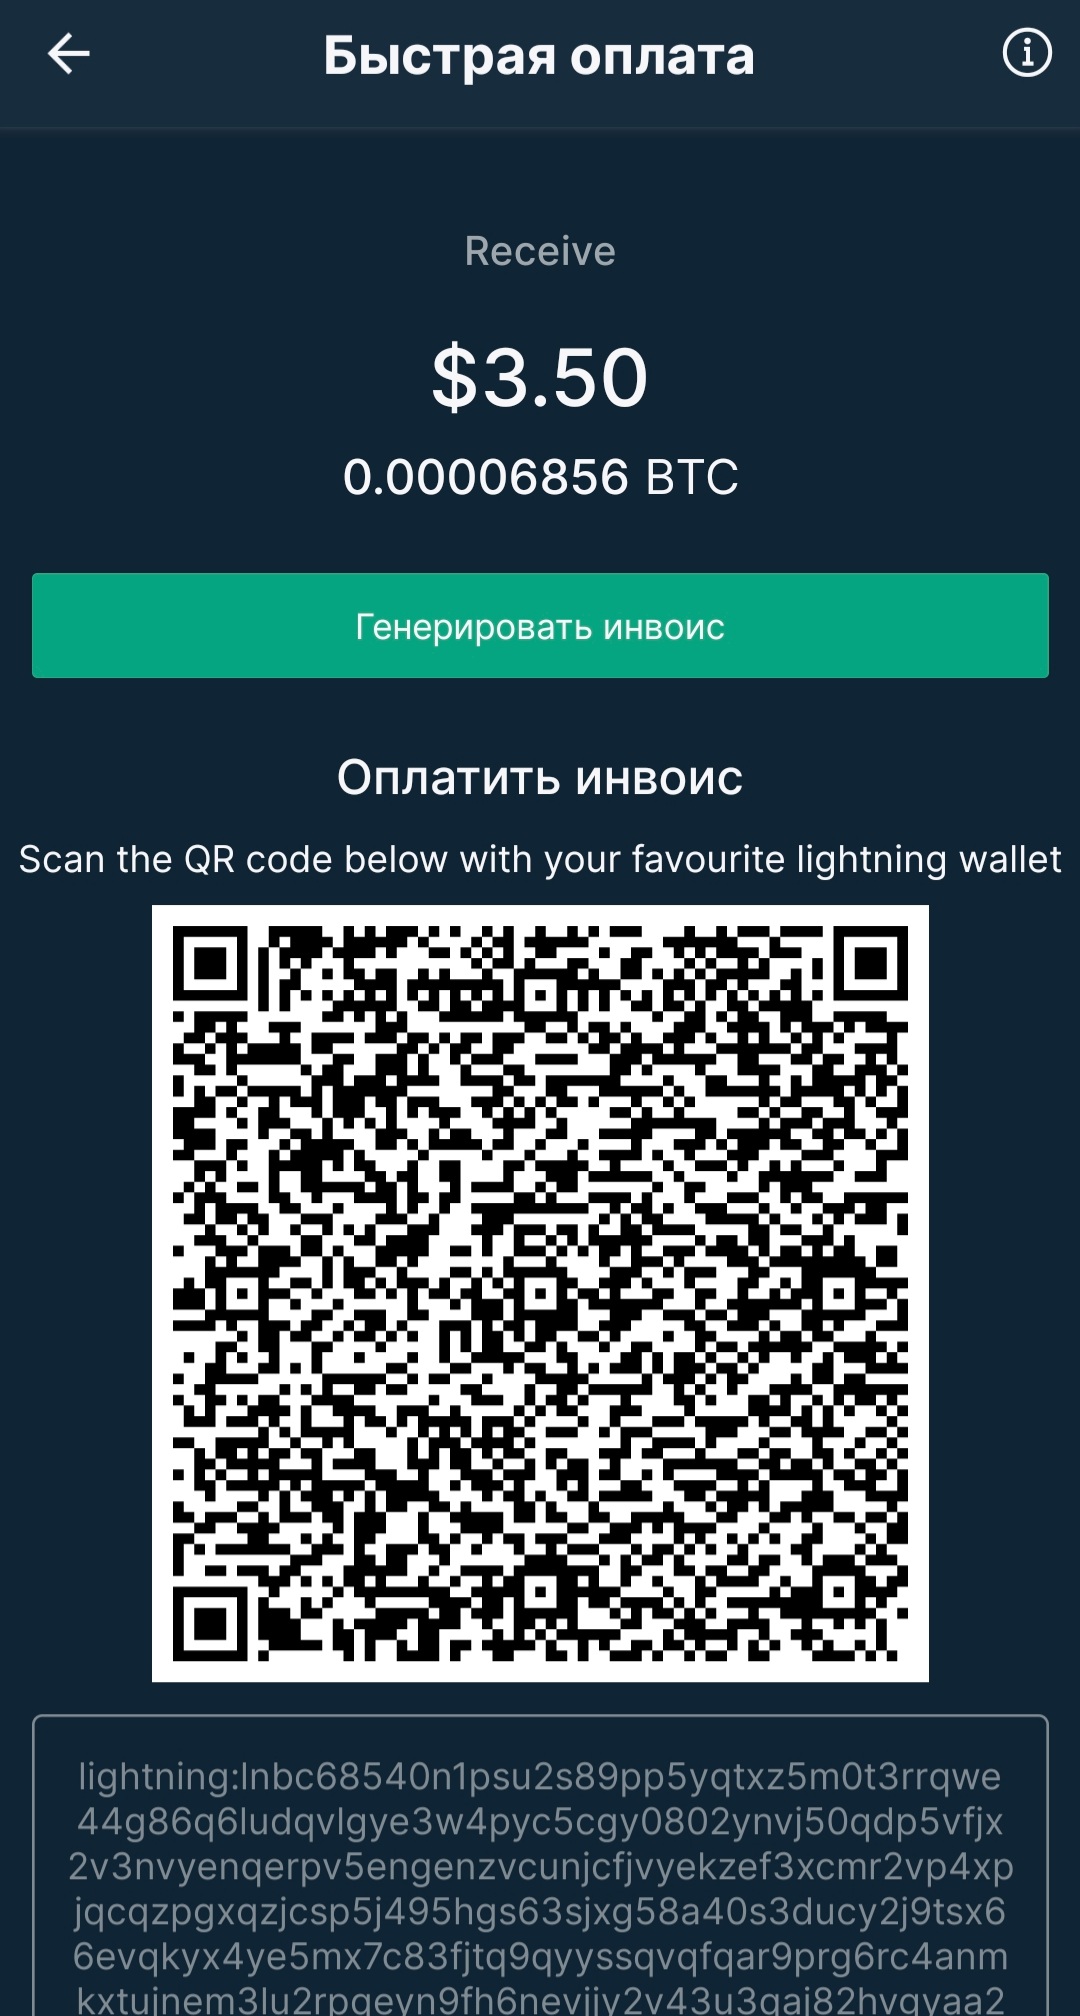 Fast_Pay_on_Bitfinex_Mobile_app5.jpg